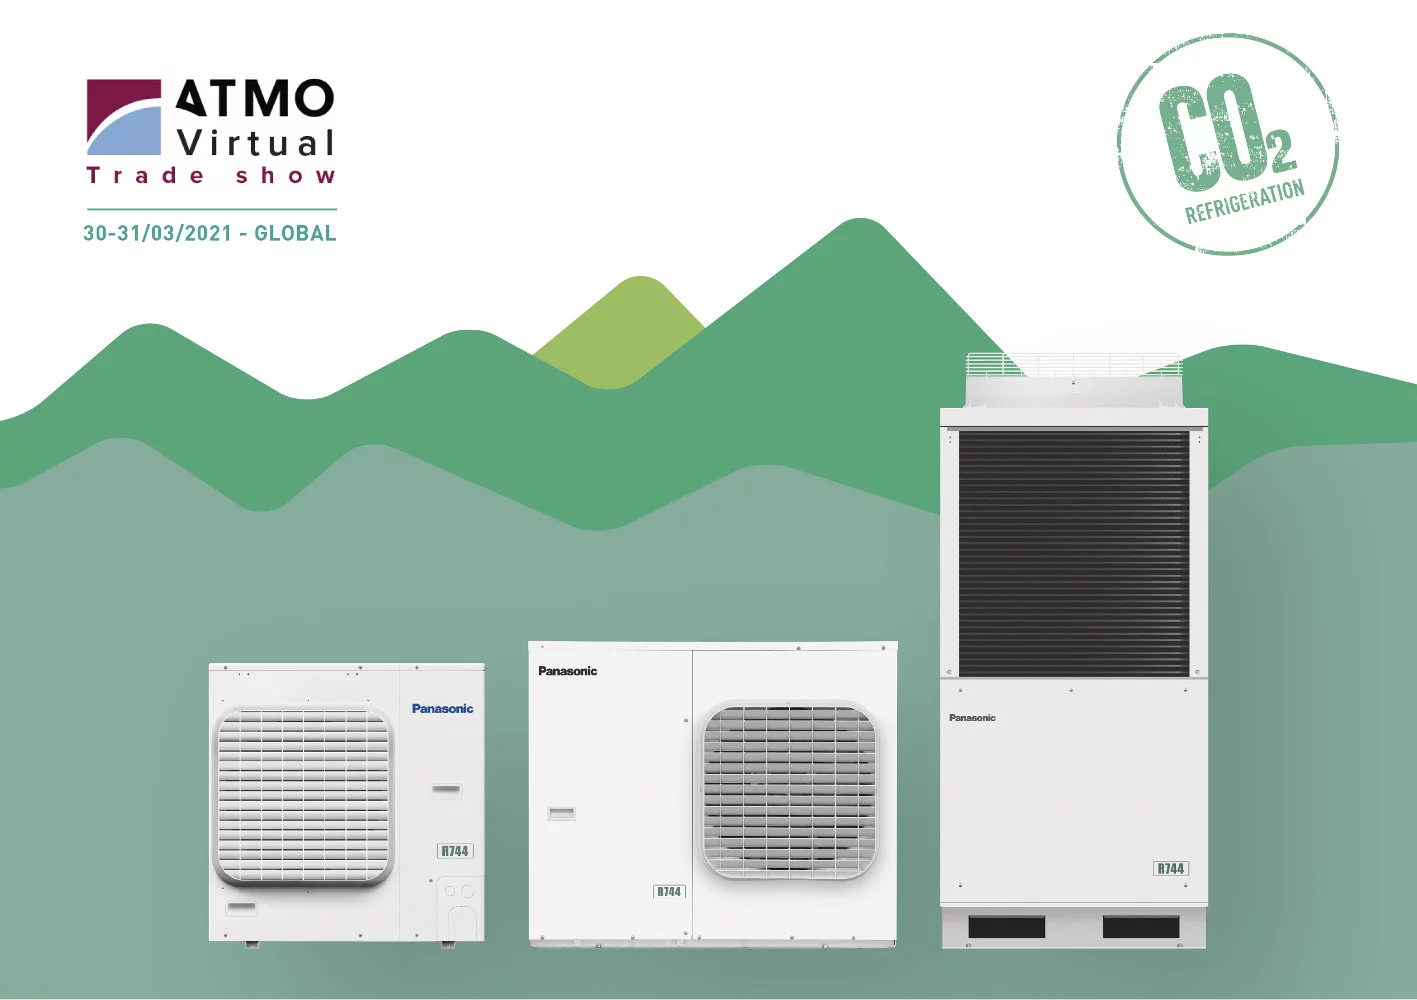 Panasonic zaprezentuje rozwiązania chłodnicze CO2 na wirtualnych targach ATMO 2021 jako wystawca Premium